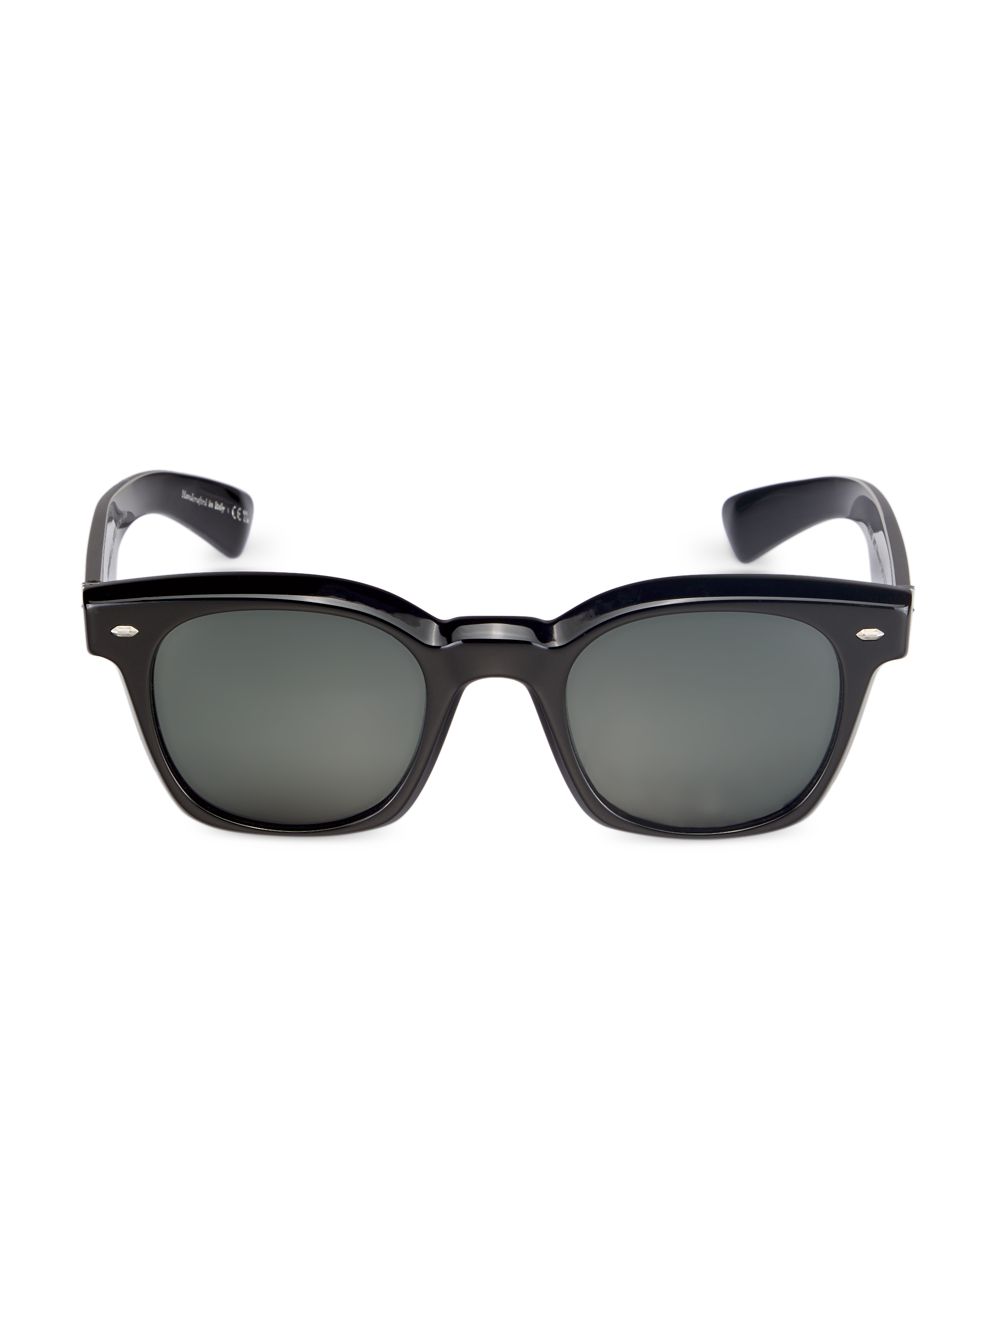 Прямоугольные солнцезащитные очки Merceaux 50 мм Brunello Cucinelli & Oliver Peoples, черный